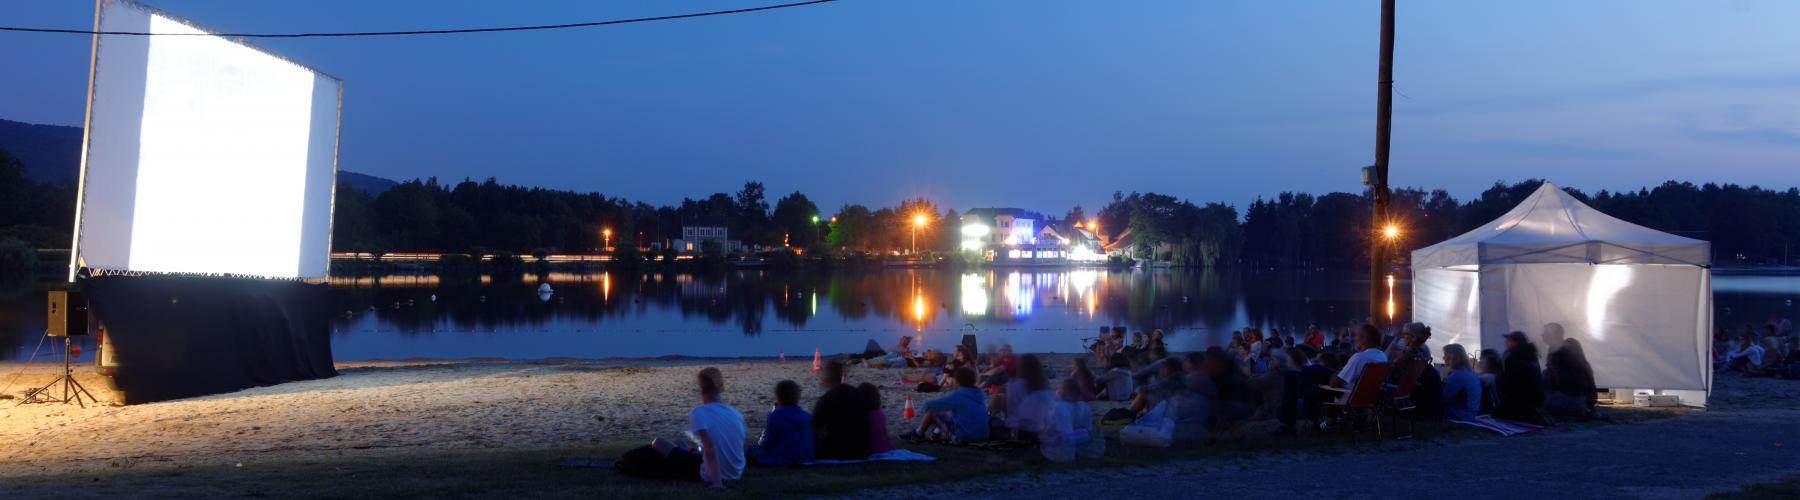 personnes devant un projecteur blanc, de nuit, assis face à à un lac ou la mer, qui attendent